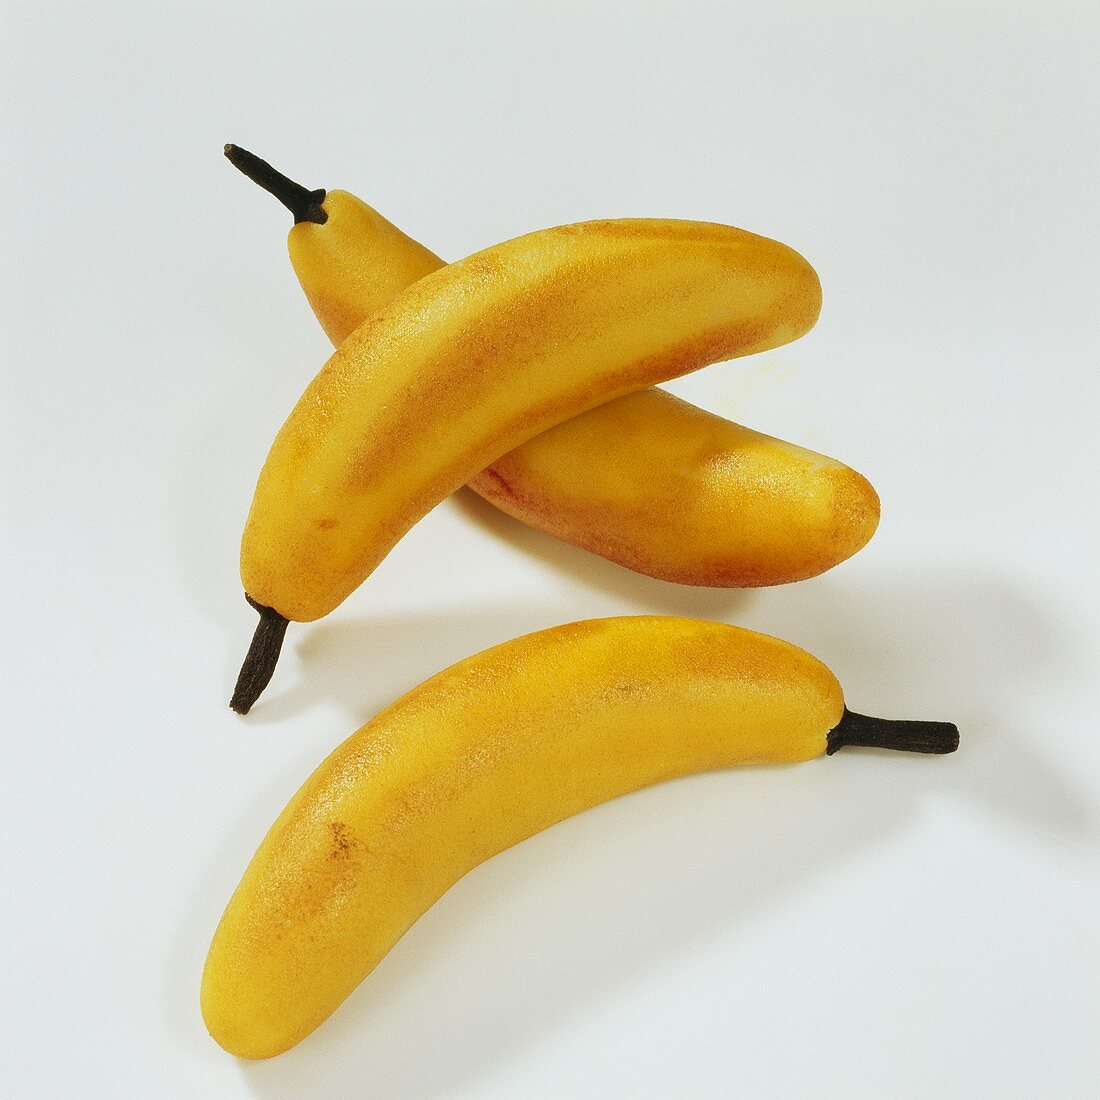 Three marzipan bananas